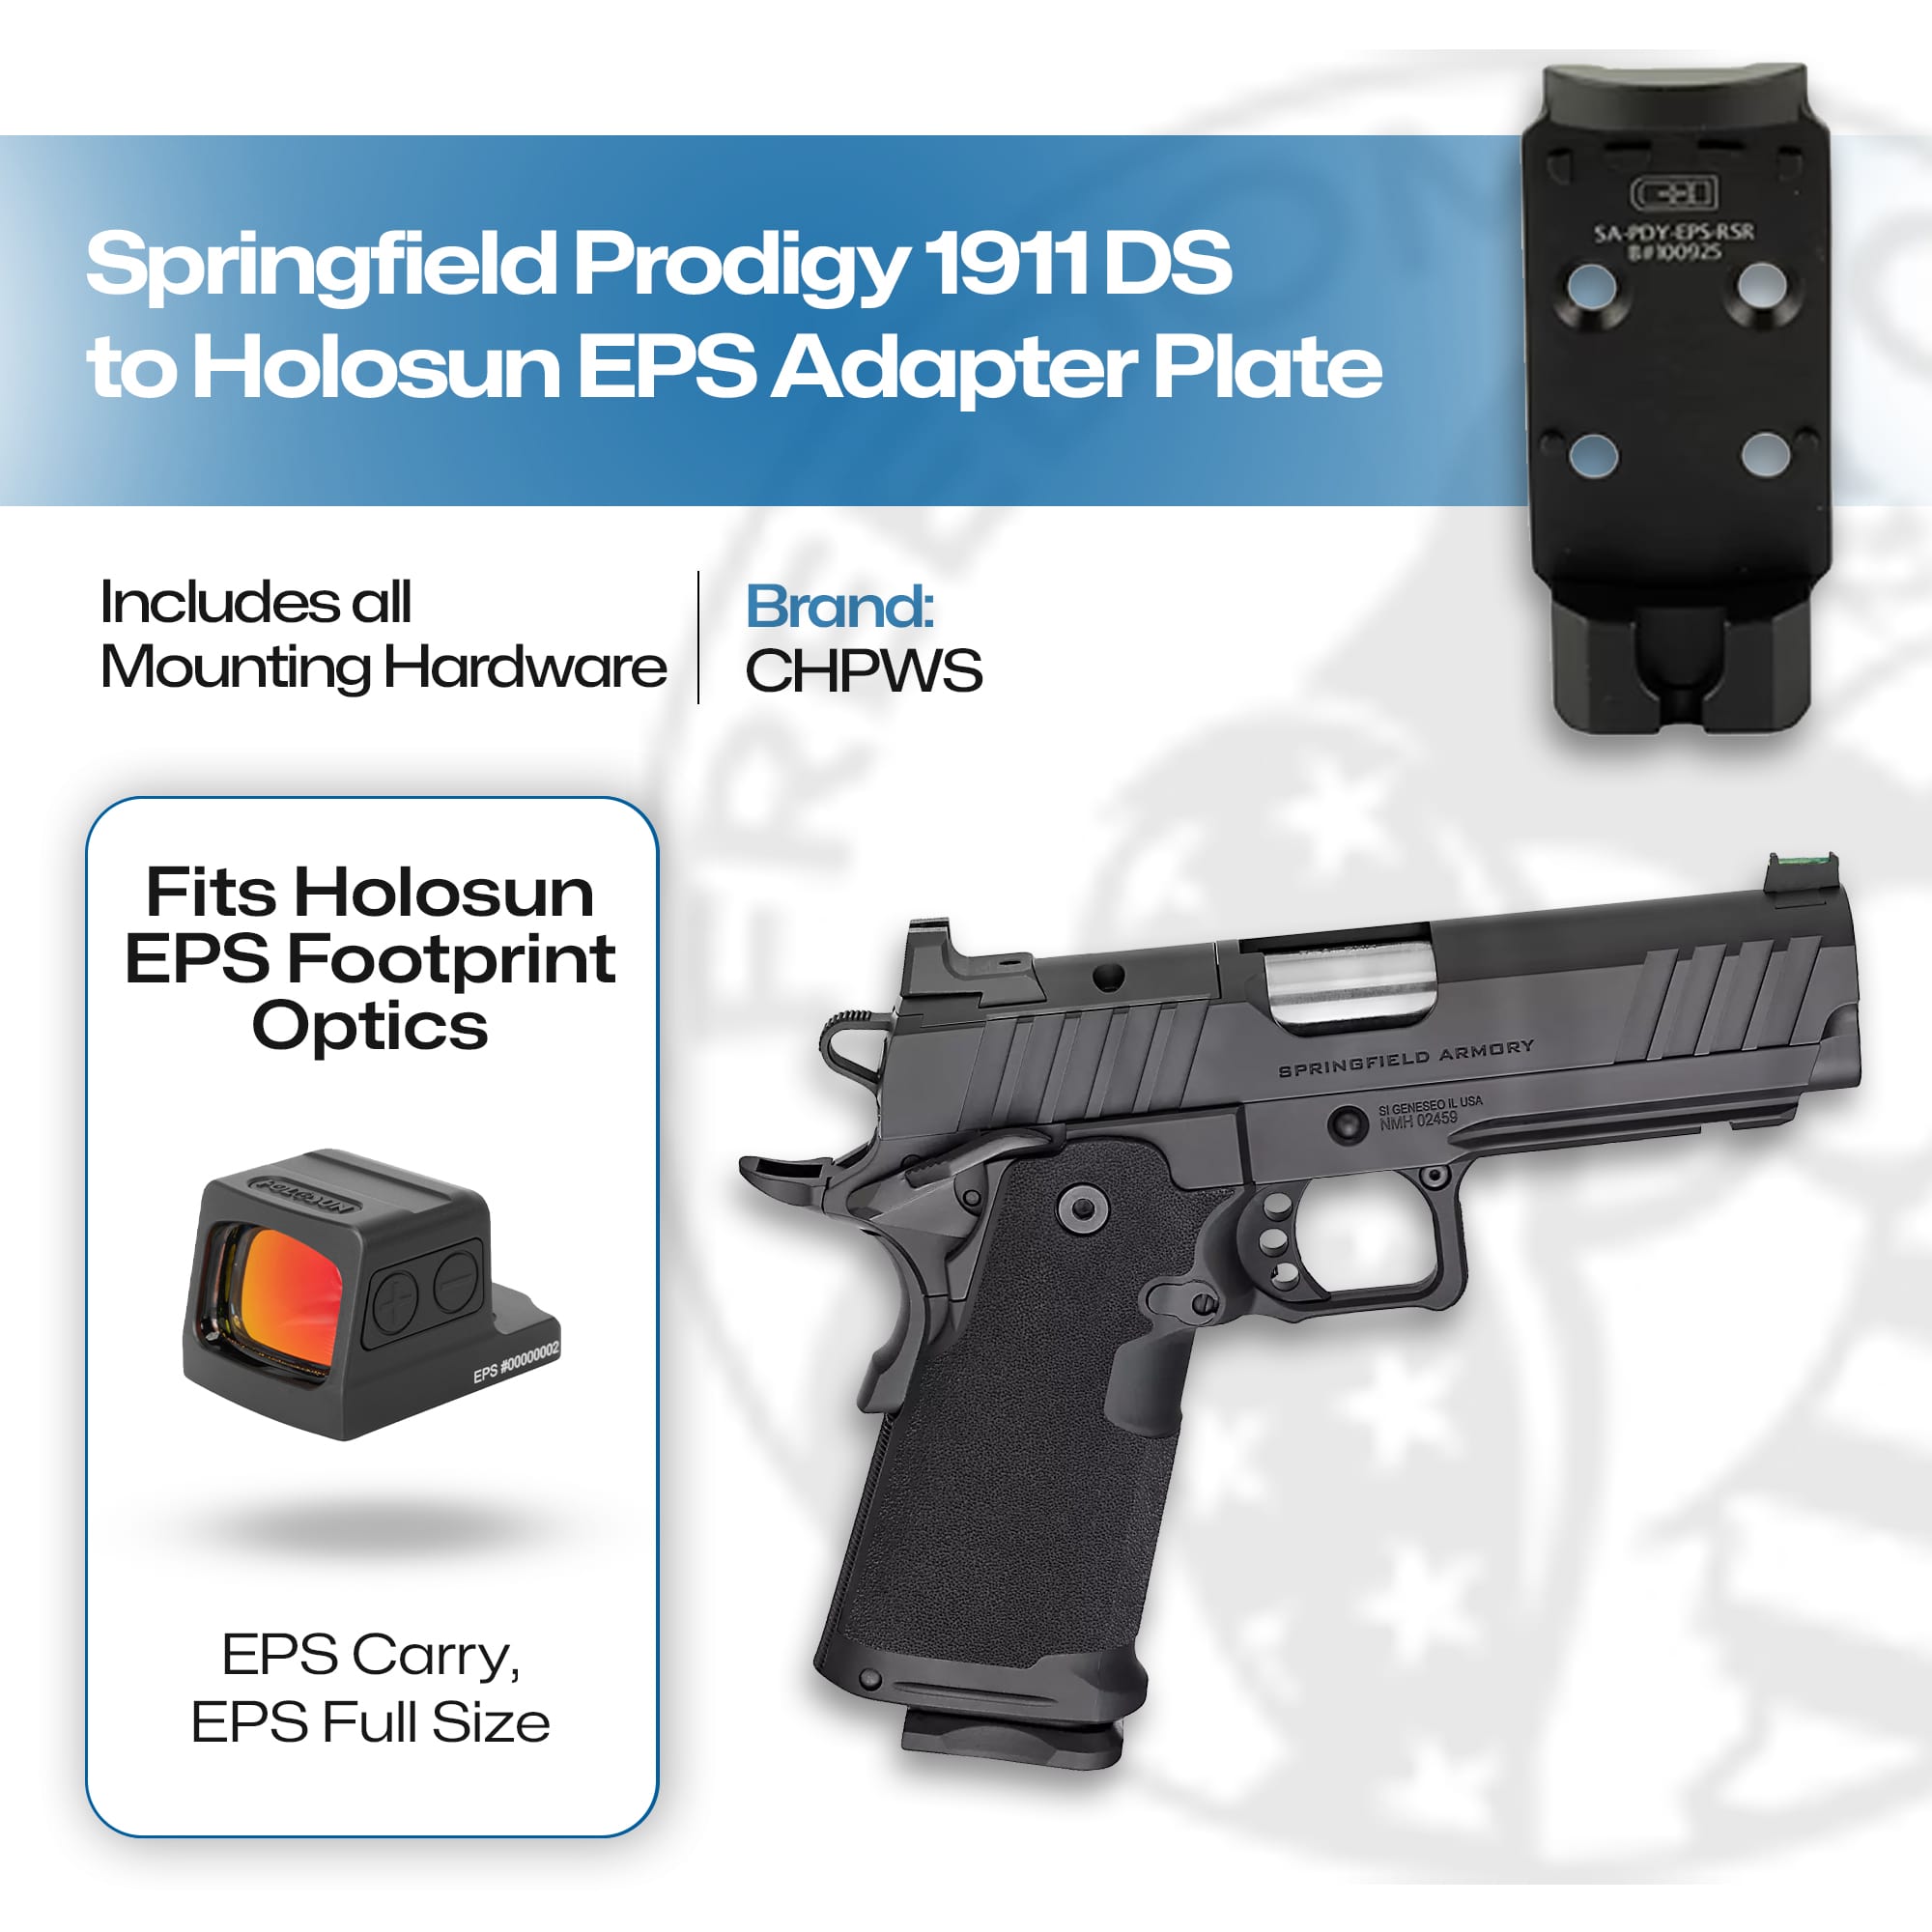 CHPWS SPRNGFLD PRDIGY ADPTR EPS W/RS - SA-PDY-EPS-RSR